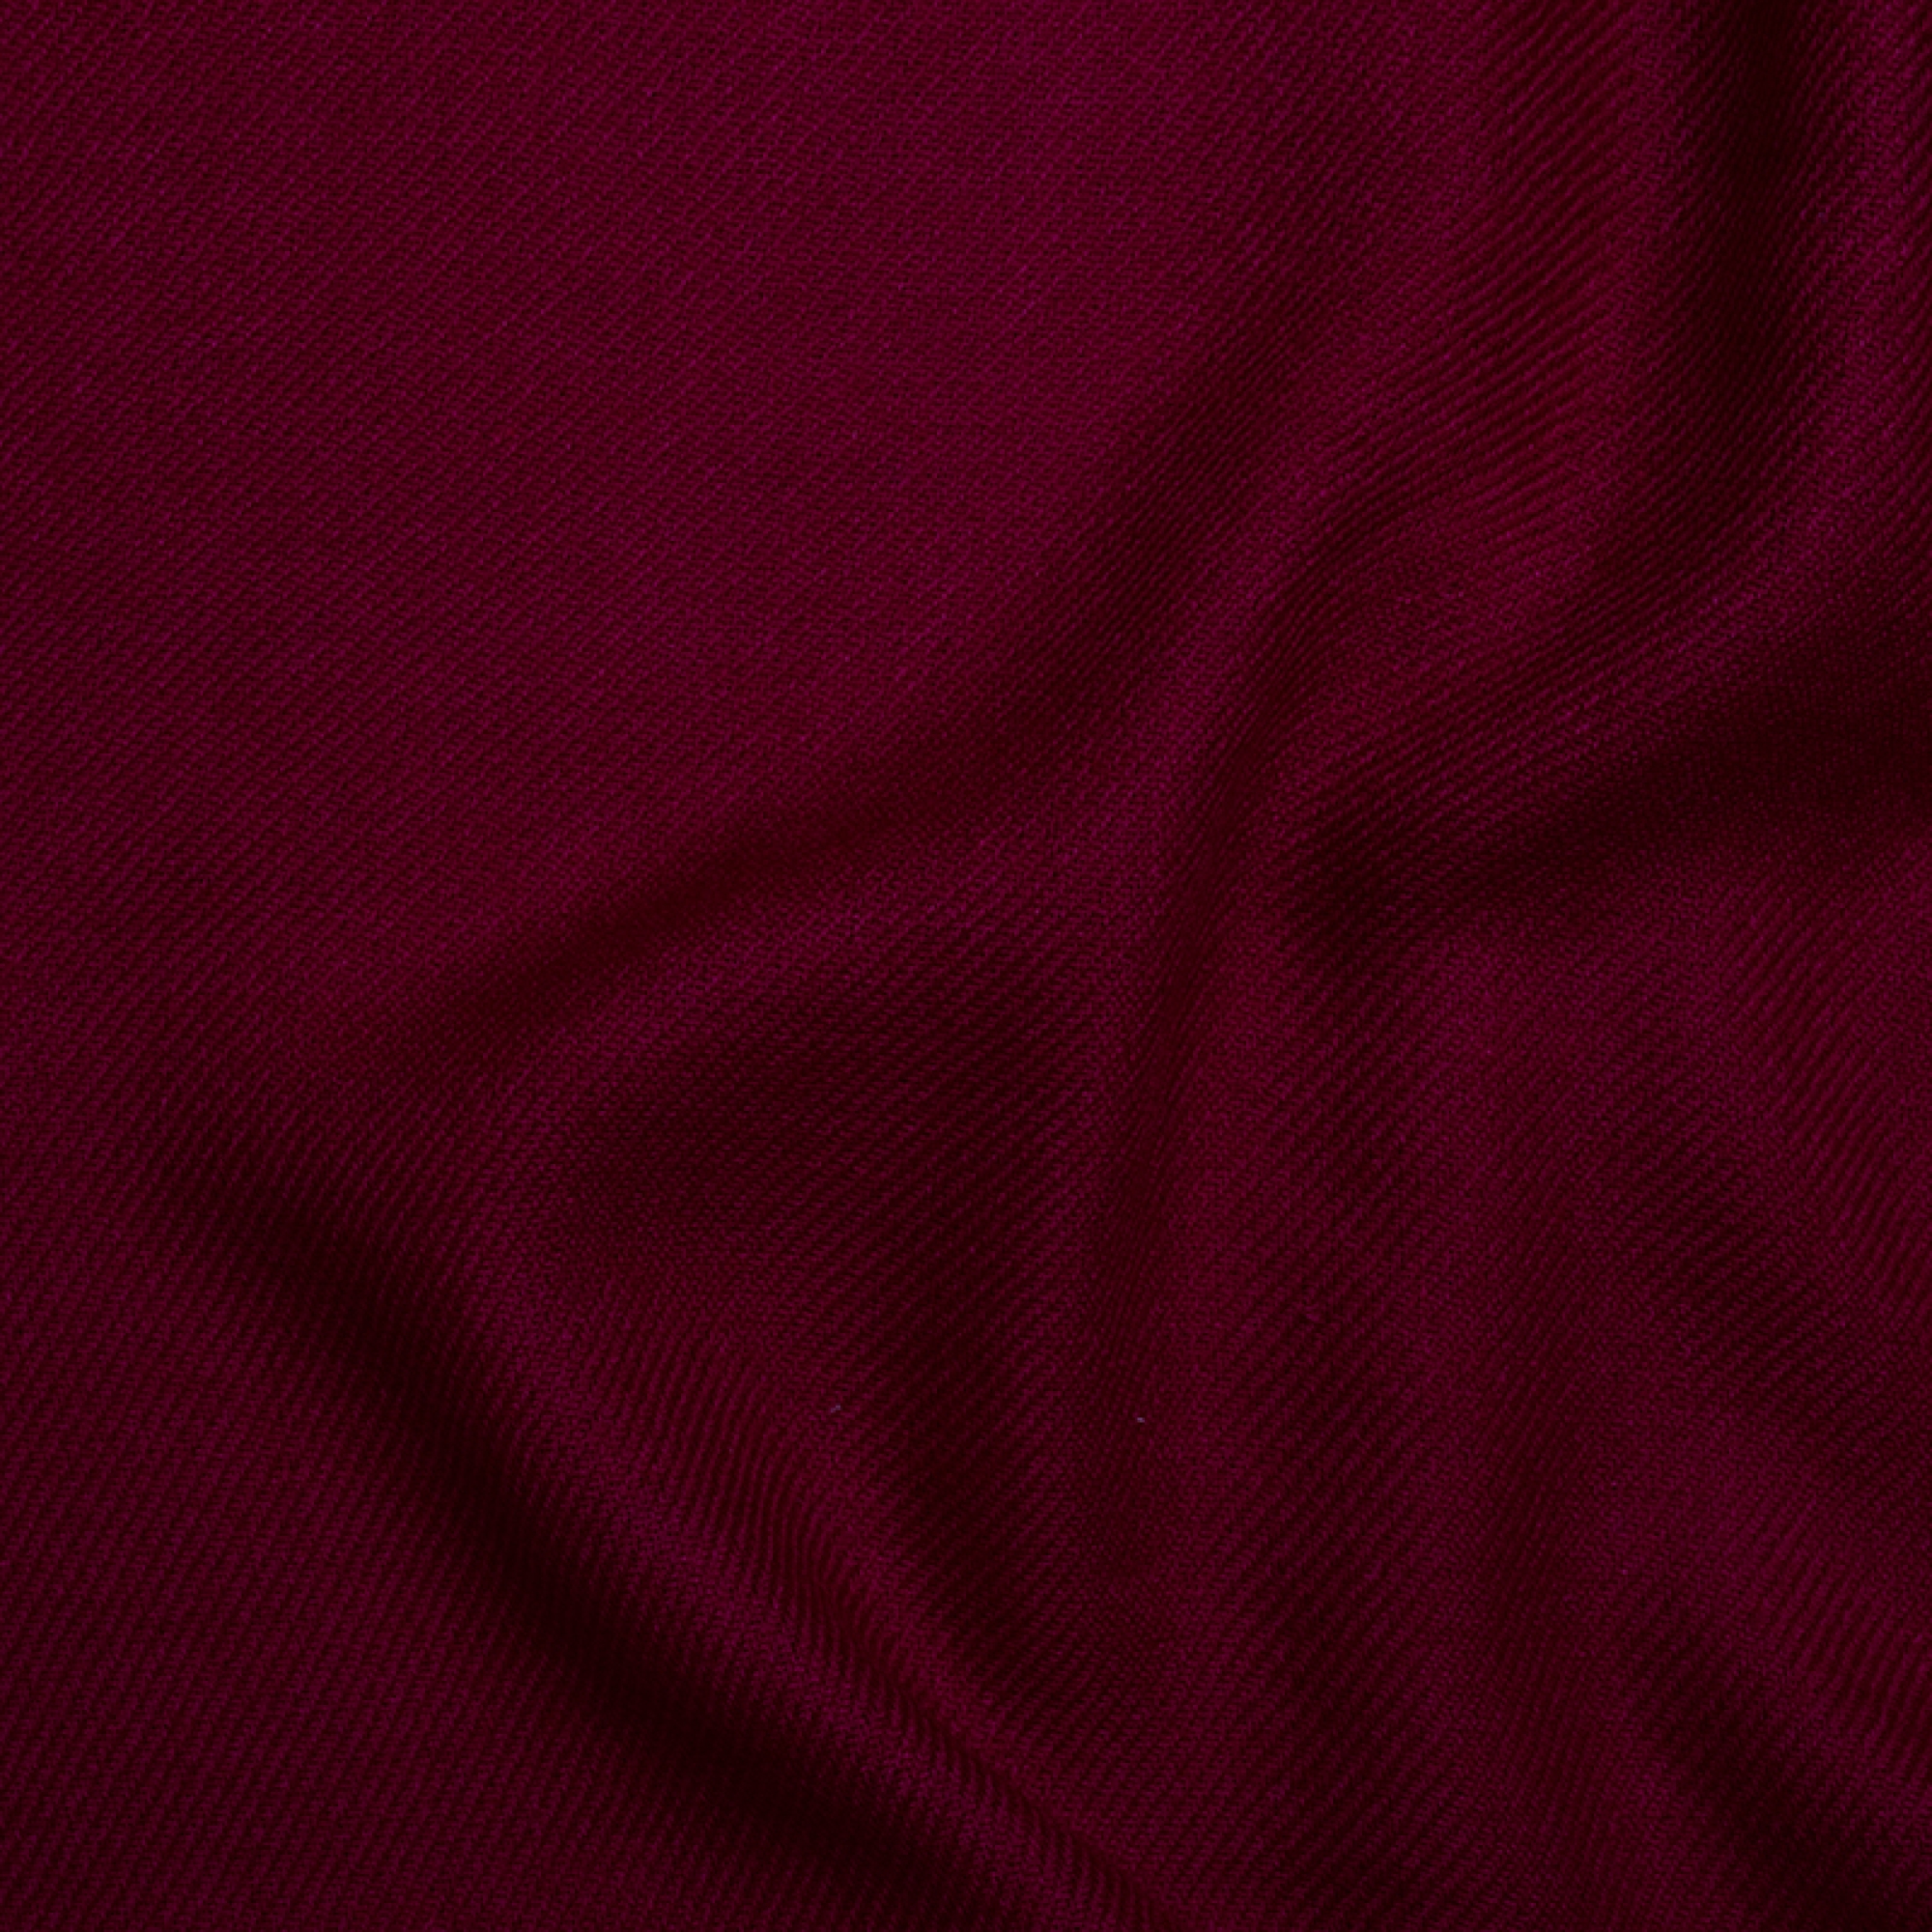 Cachemire accessoires couvertures plaids toodoo plain s 140 x 200 cerise 140 x 200 cm